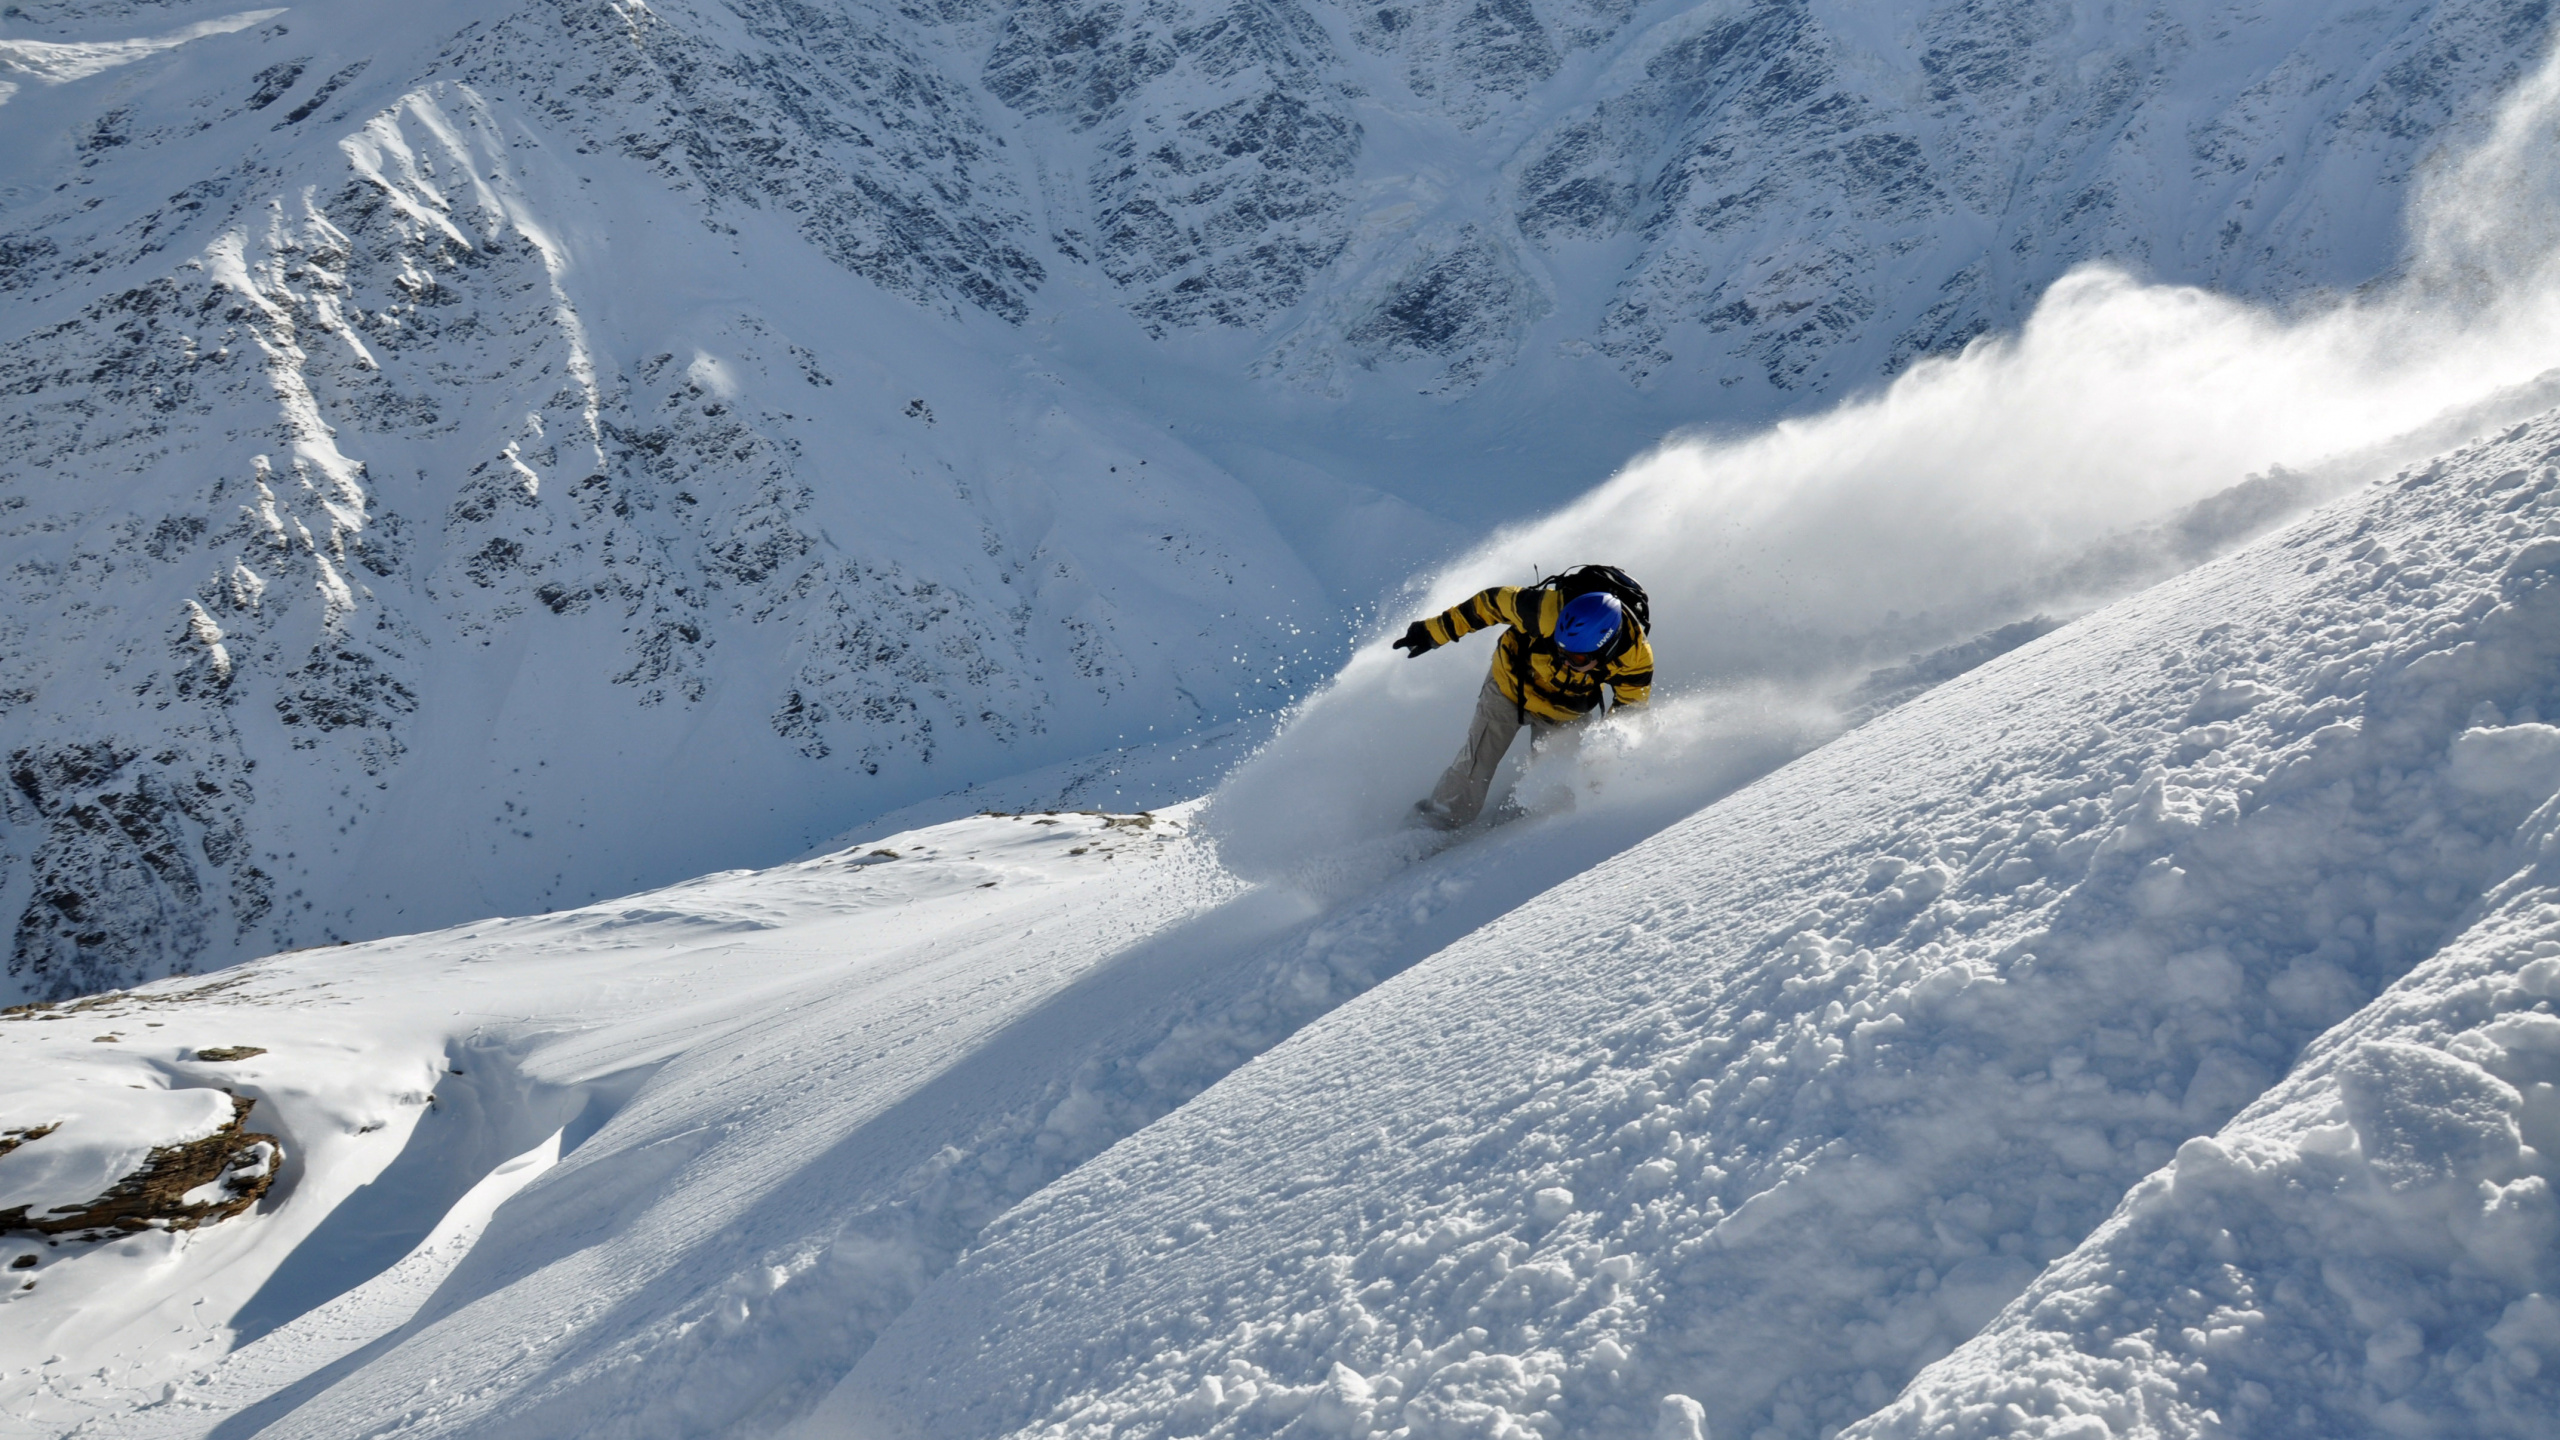 Ski de Neige Jaune et Noir Sur la Montagne Couverte de Neige Pendant la Journée. Wallpaper in 2560x1440 Resolution